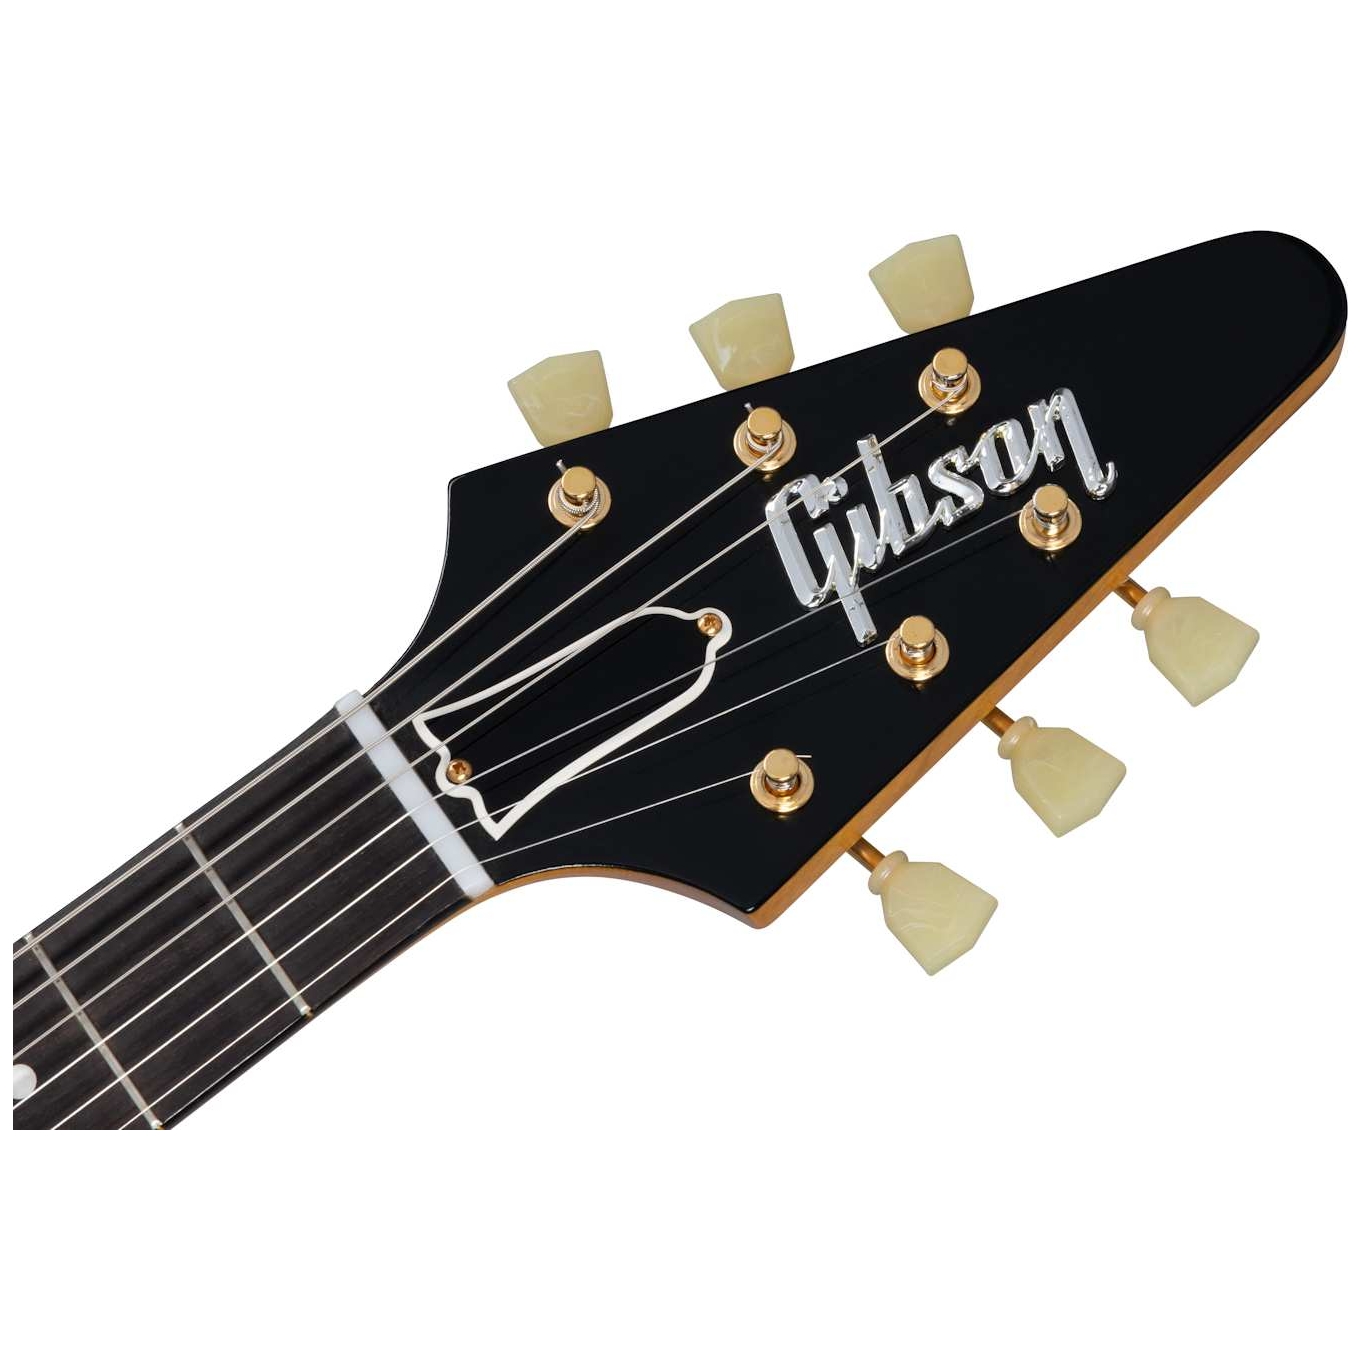 Gibson 58 Korina Flying V White Pickguard Natural VOS GH